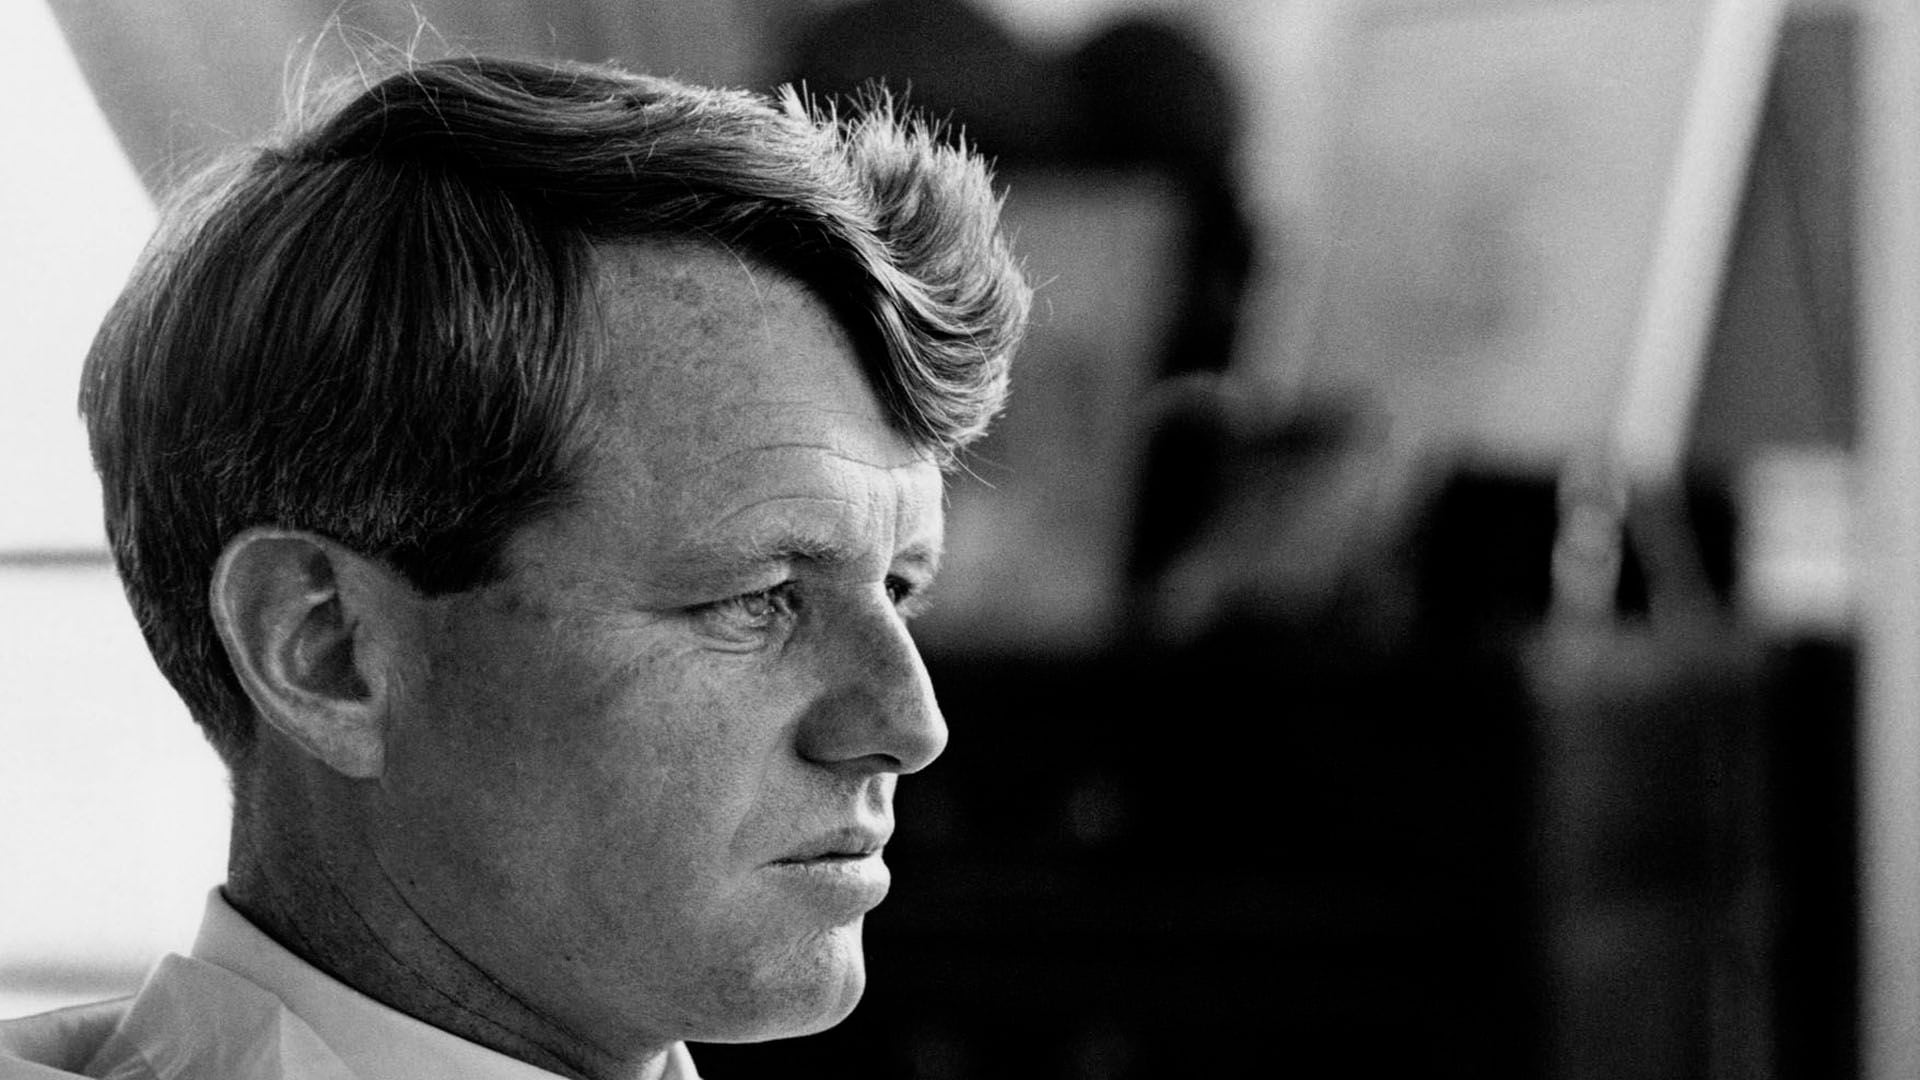 En marzo de 1968, Kennedy había decidido lanzarse a la carrera presidencial para enfrentar al casi seguro candidato republicano, Richard Nixon